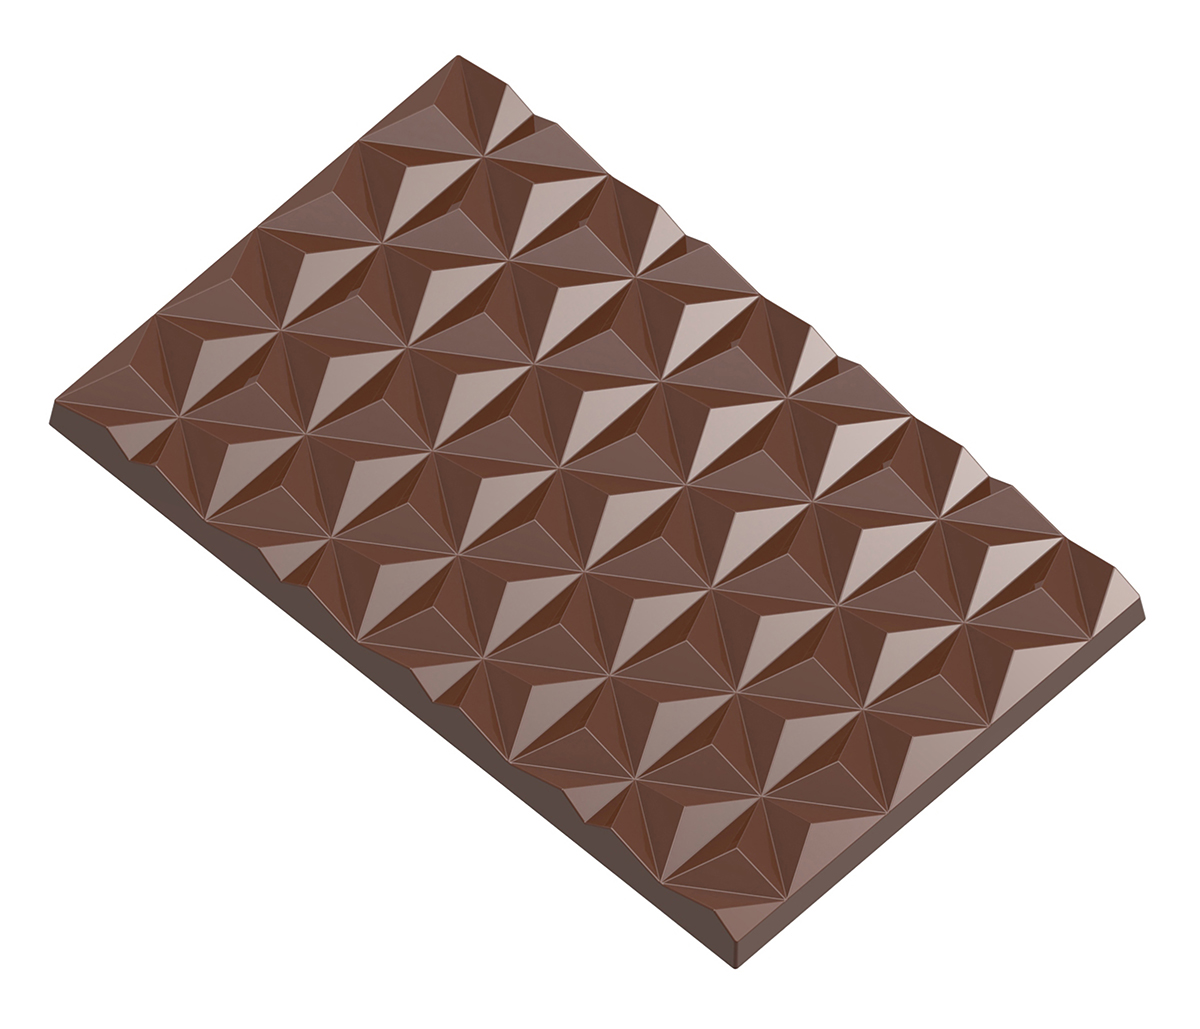 Billede af Professionel chokoladeform i polycarbonat - Tablet with star pattern CW12006